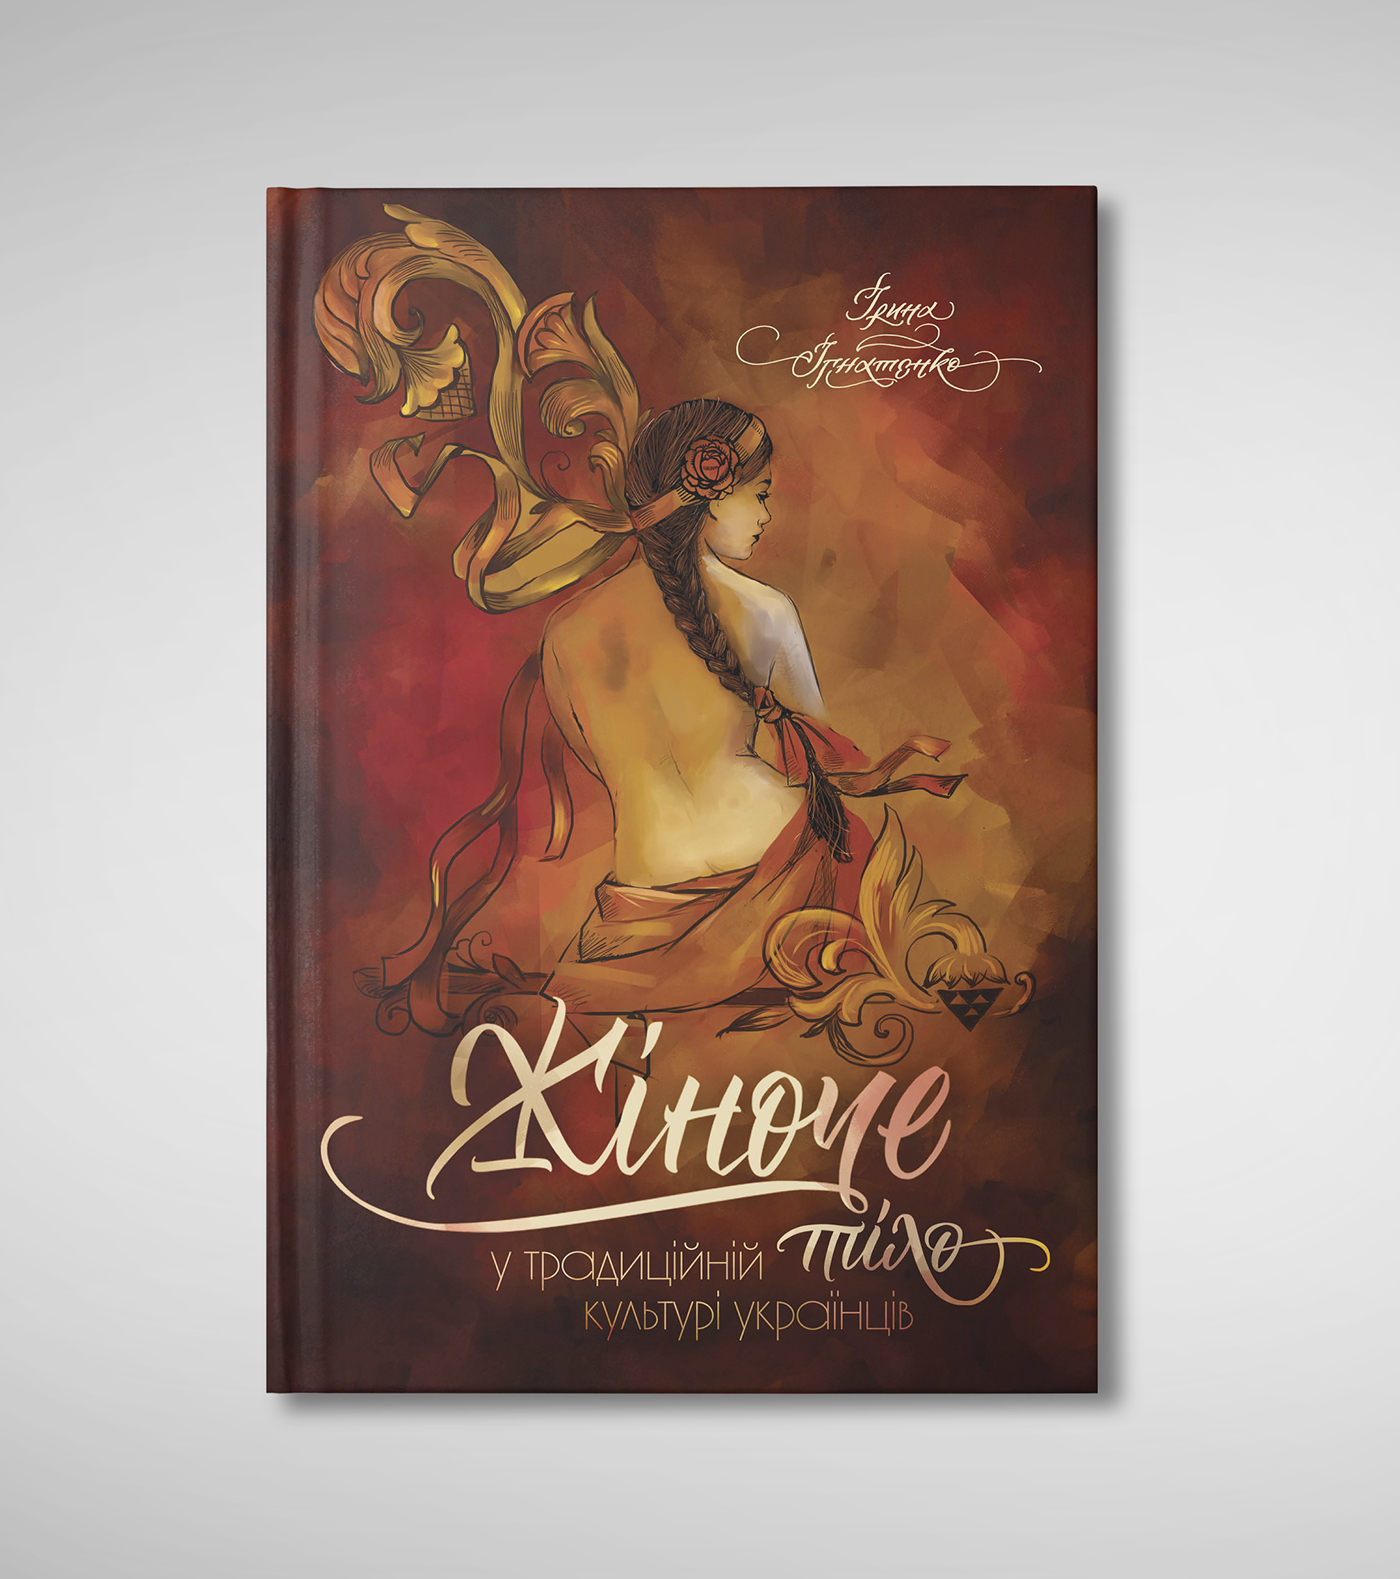 66/5000 oblozhka knigi dizayn knigi kniga izdaniye dizayn illyustratsiya book cover book design book